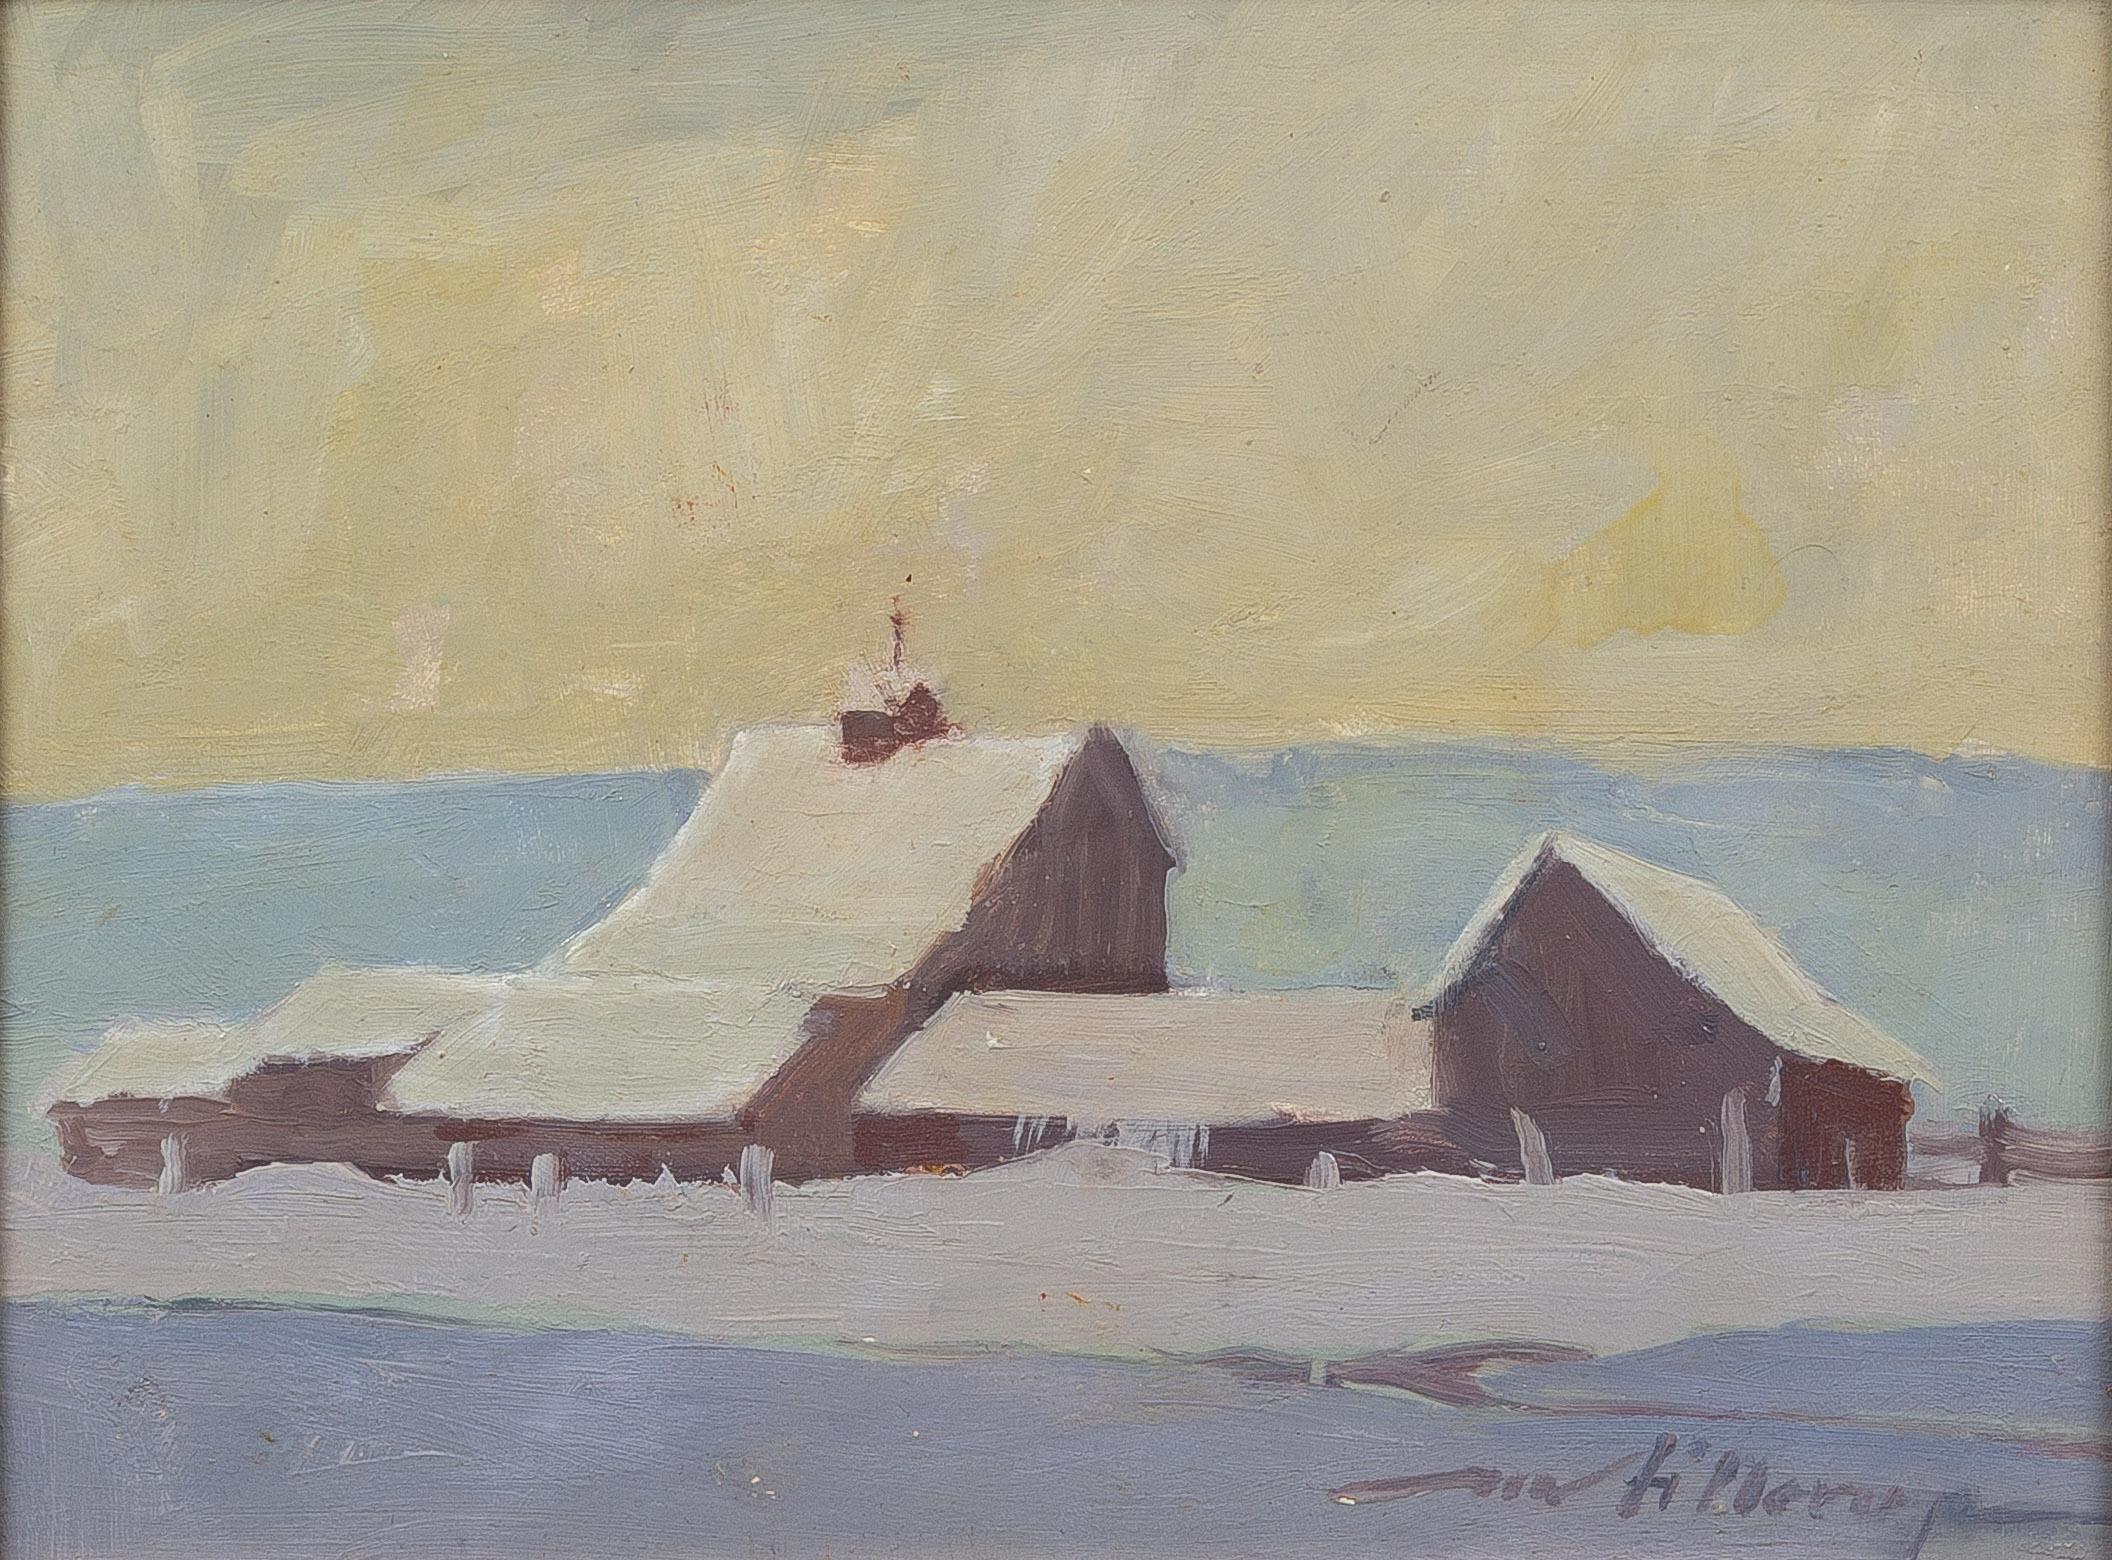 Winter's Blanket, Barn Snowscape Oil on Board, Western Art - Painting by Mel Fillerup